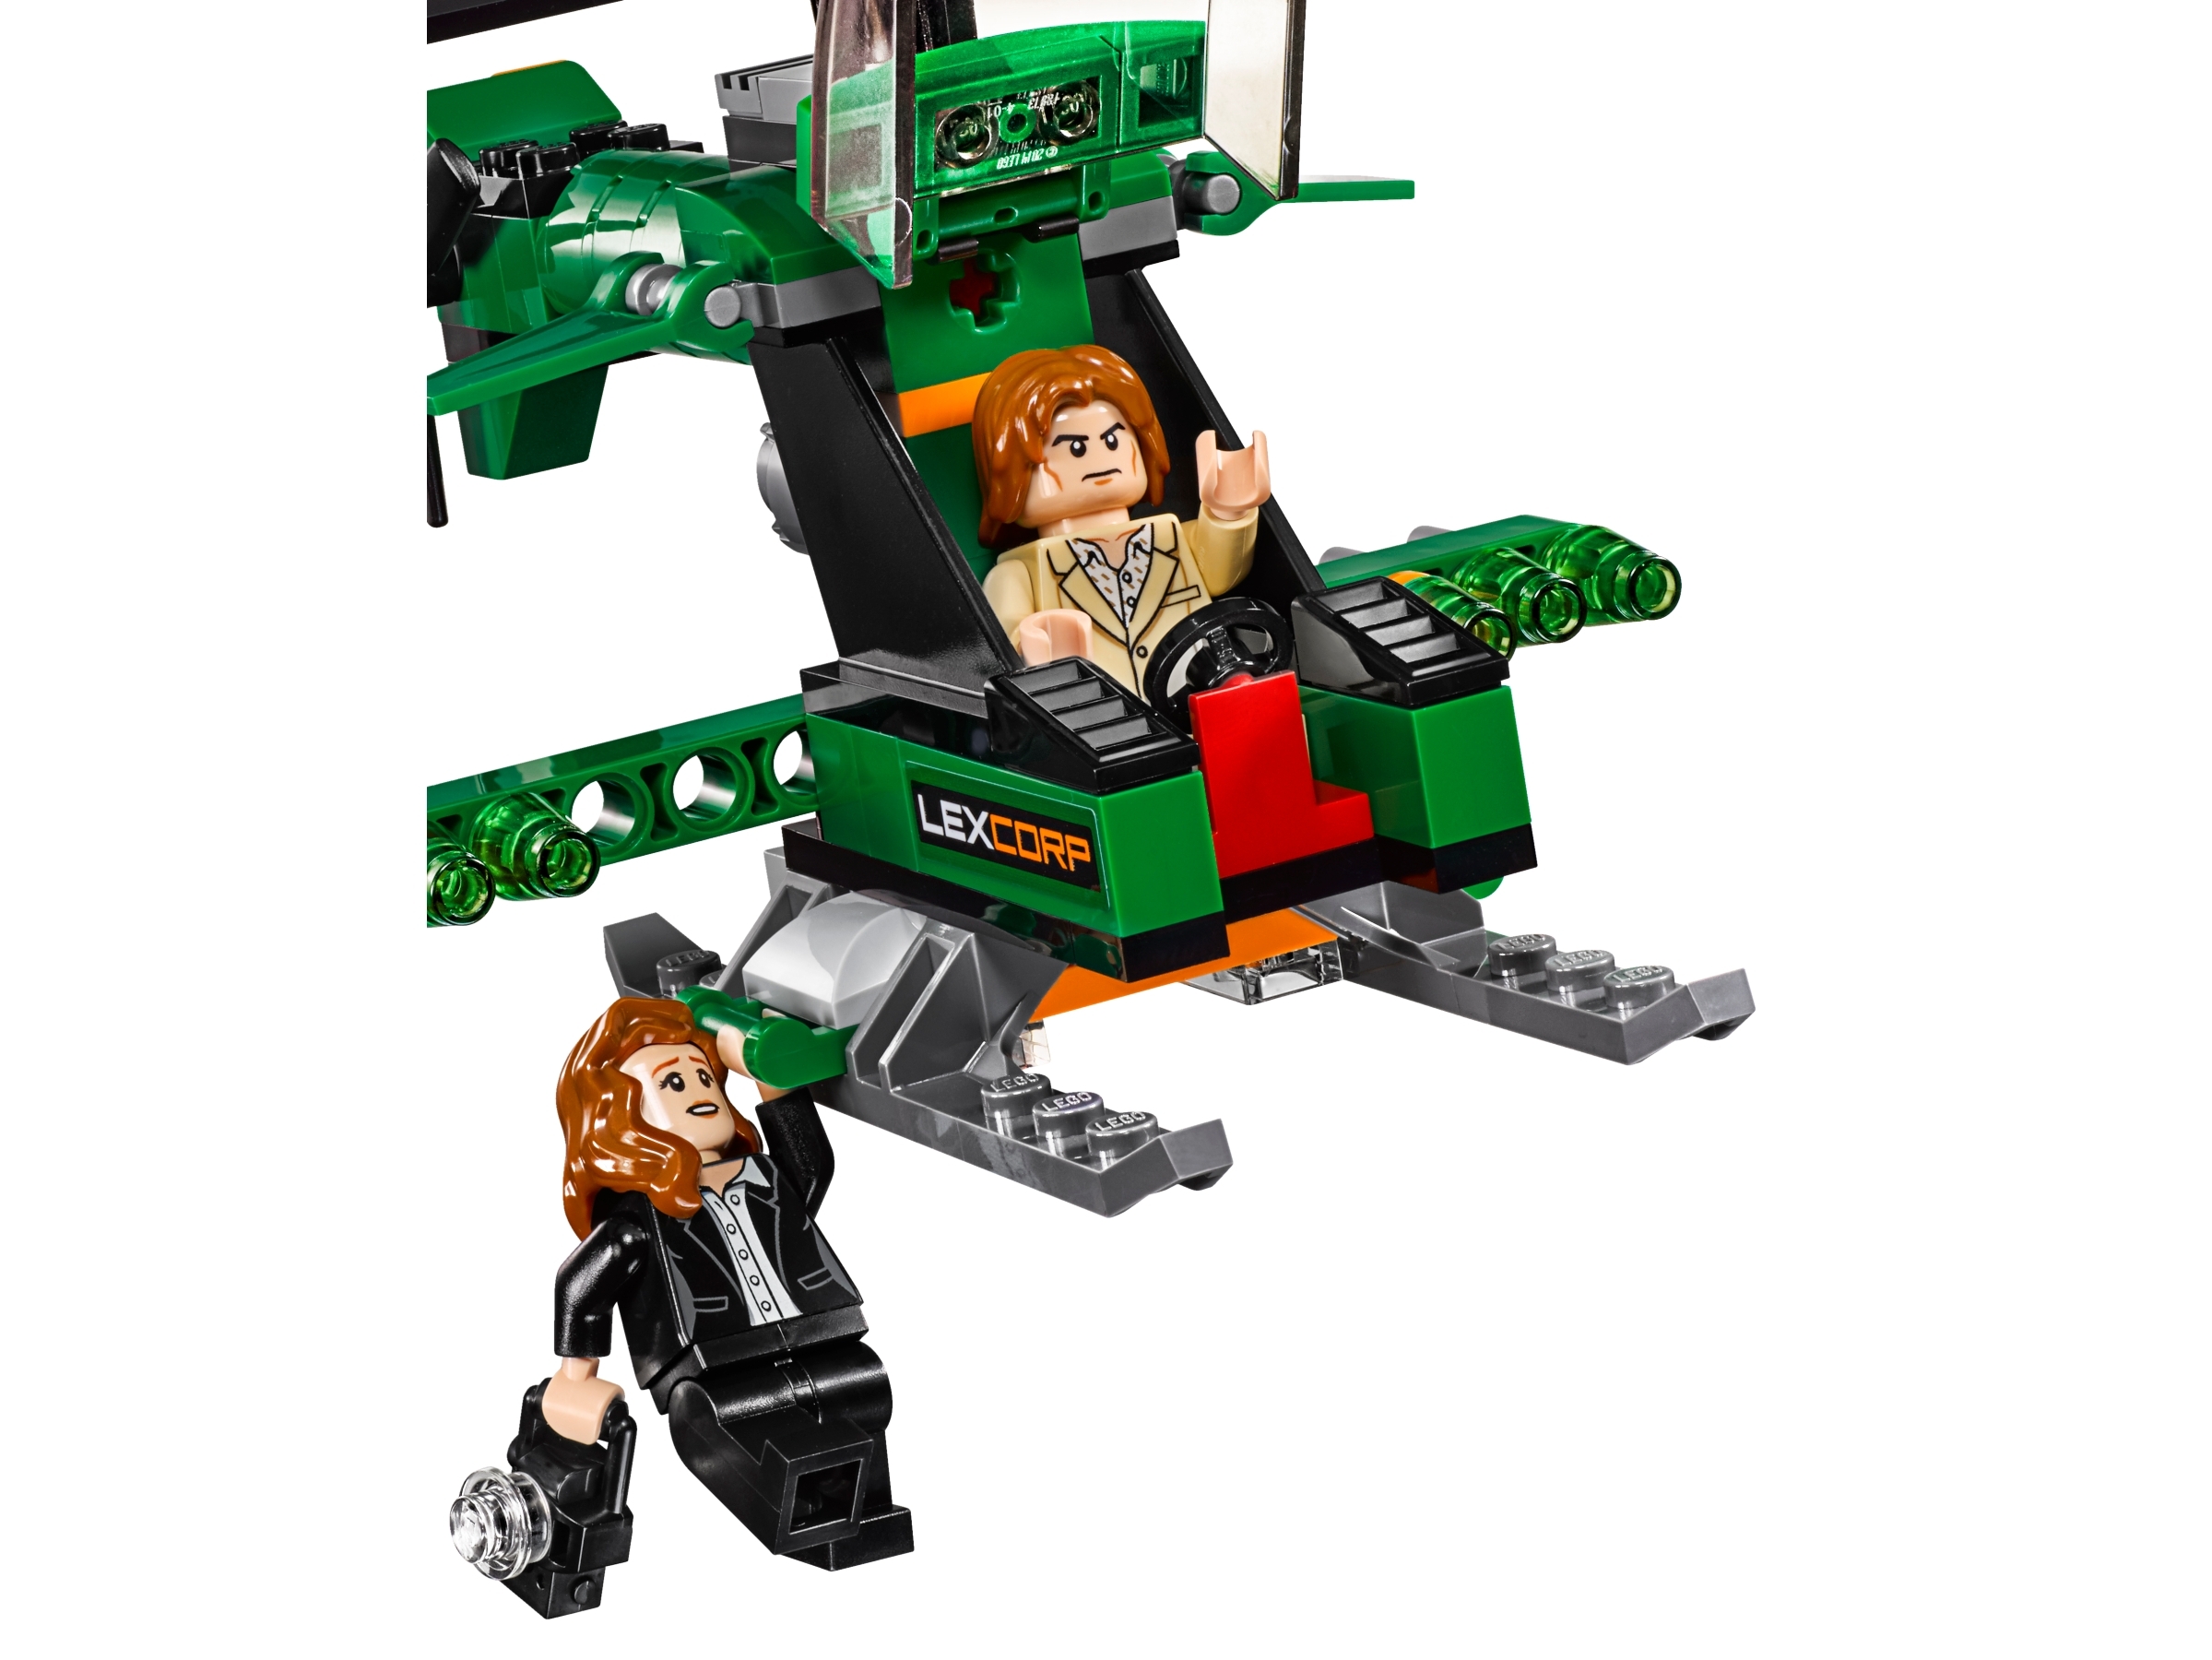 Nuevo Lego Super Heroes Minifigura Lex Luthor Set 76046 100% Original